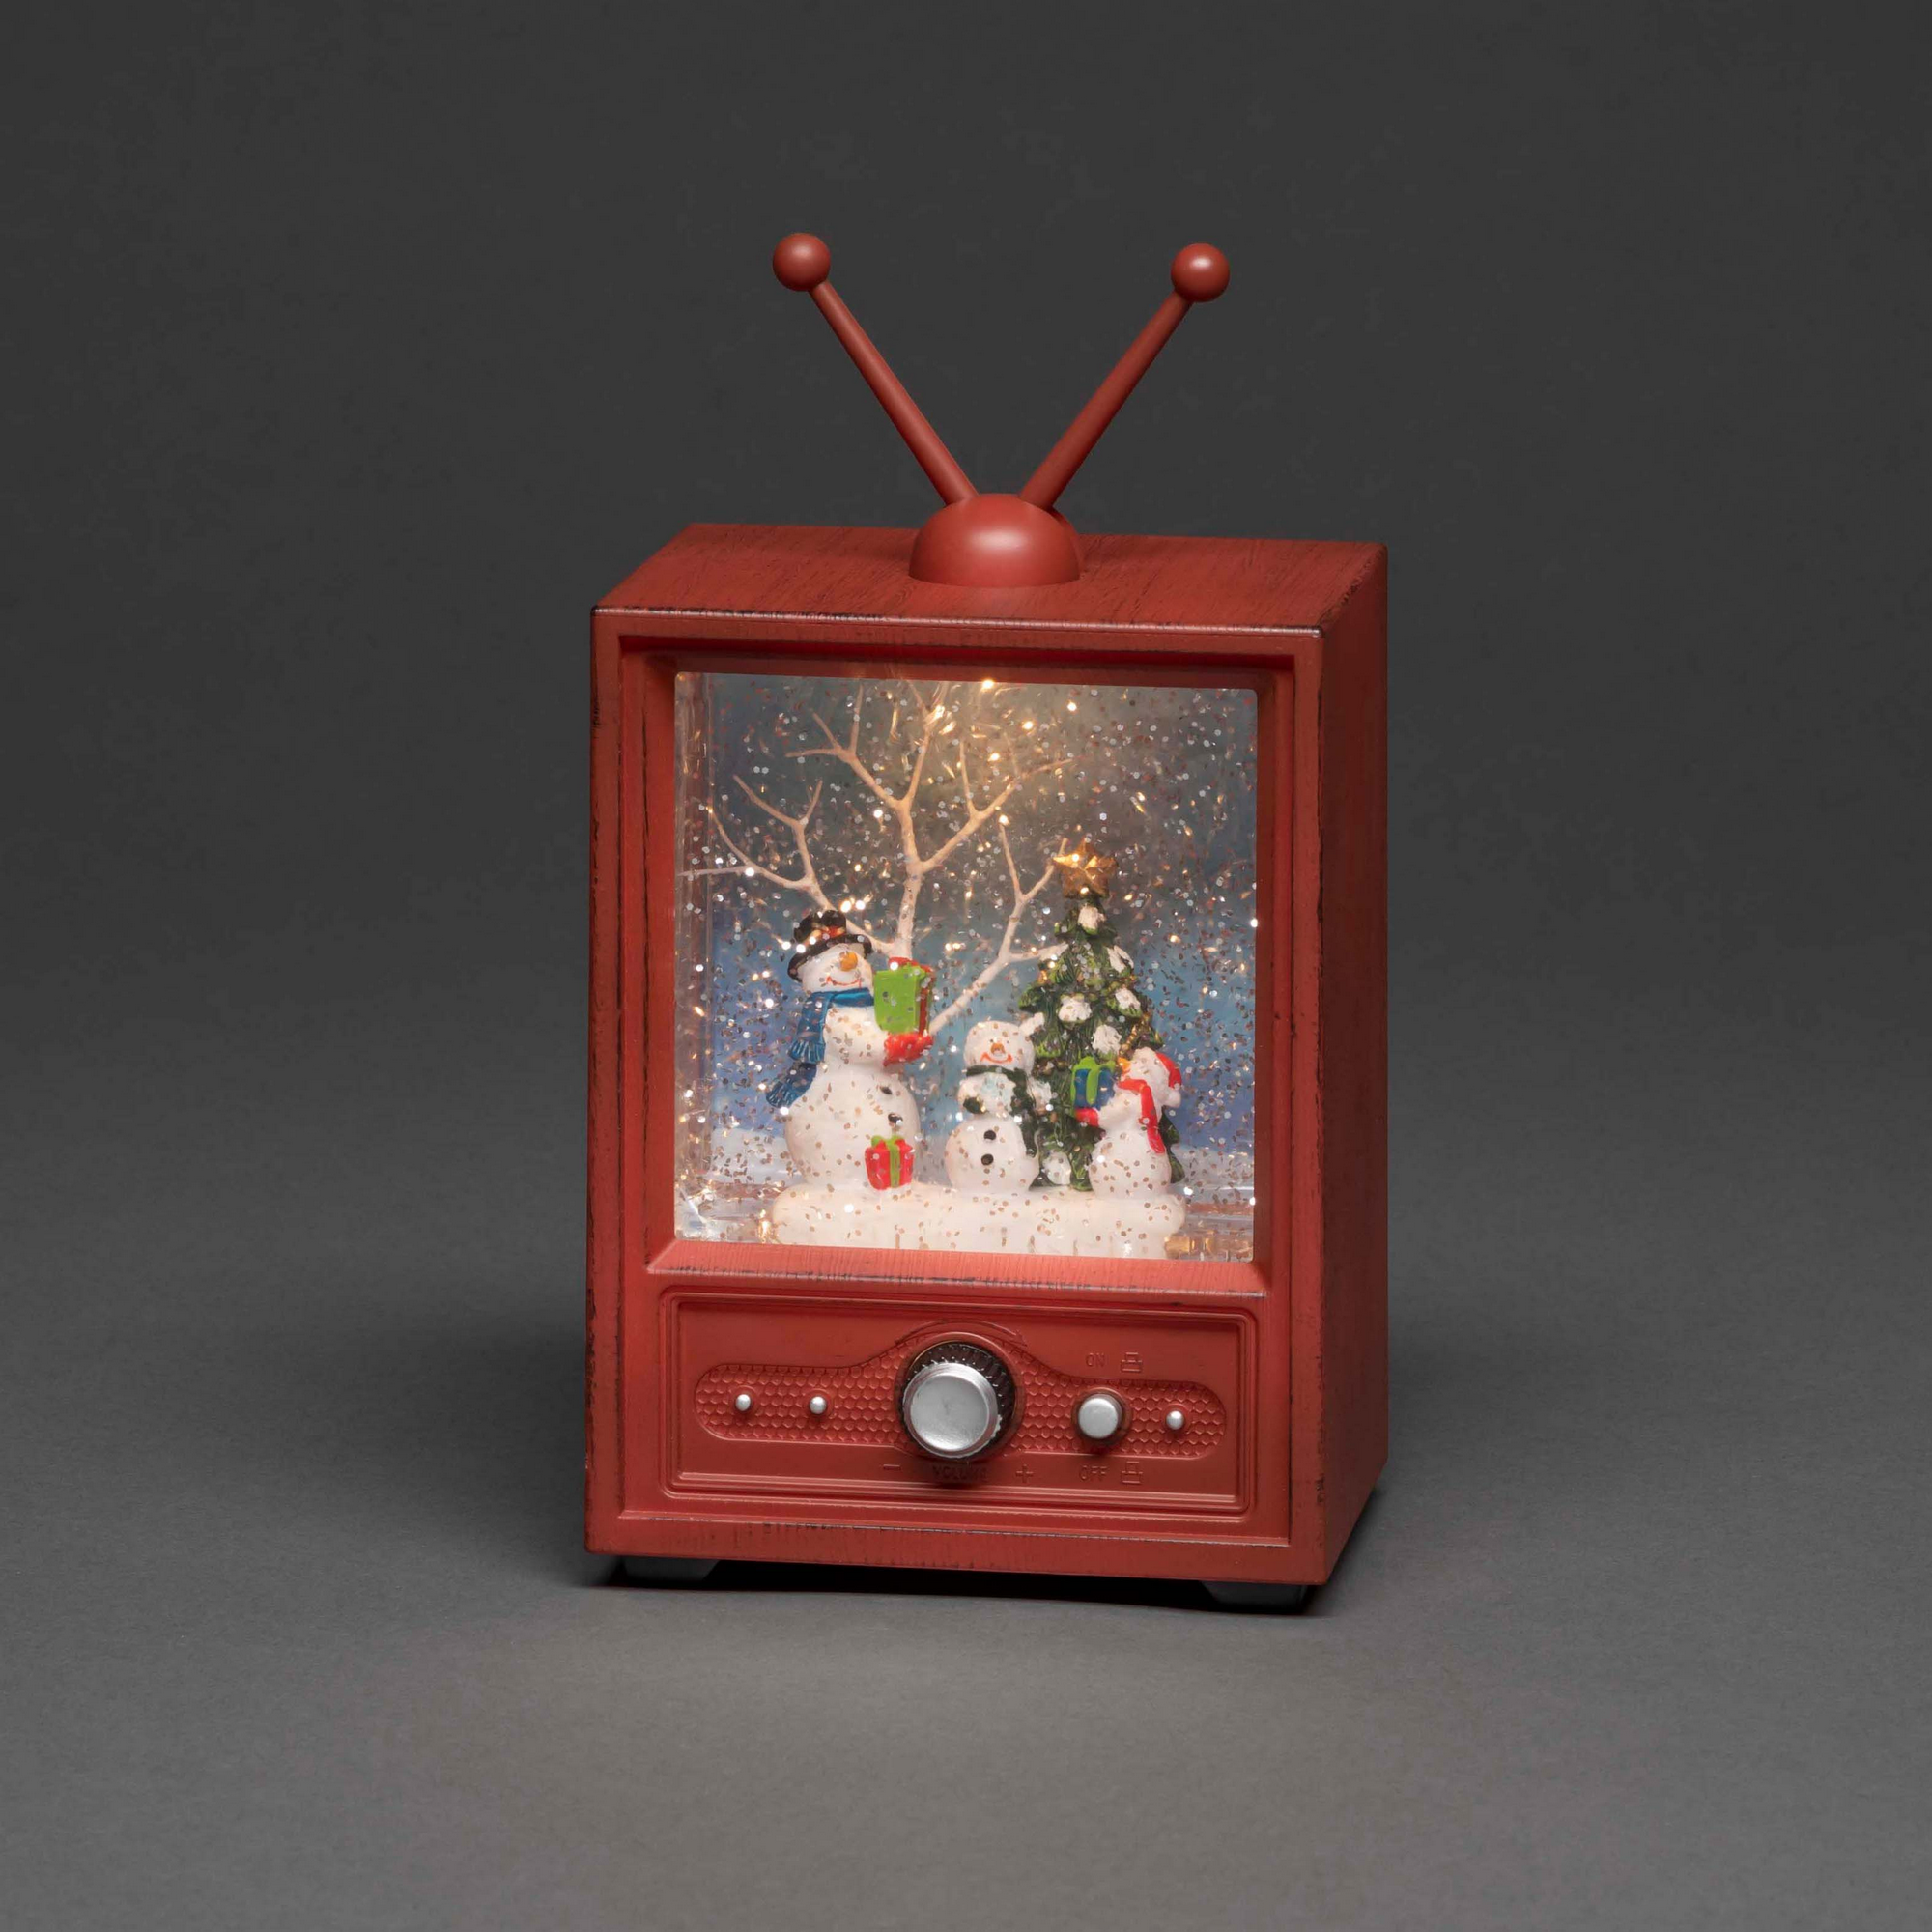 LED-Wasserlaterne 'Fernseher mit Schneemännern' 1 LED warmweiß 12,5 x 21,5 cm + product picture